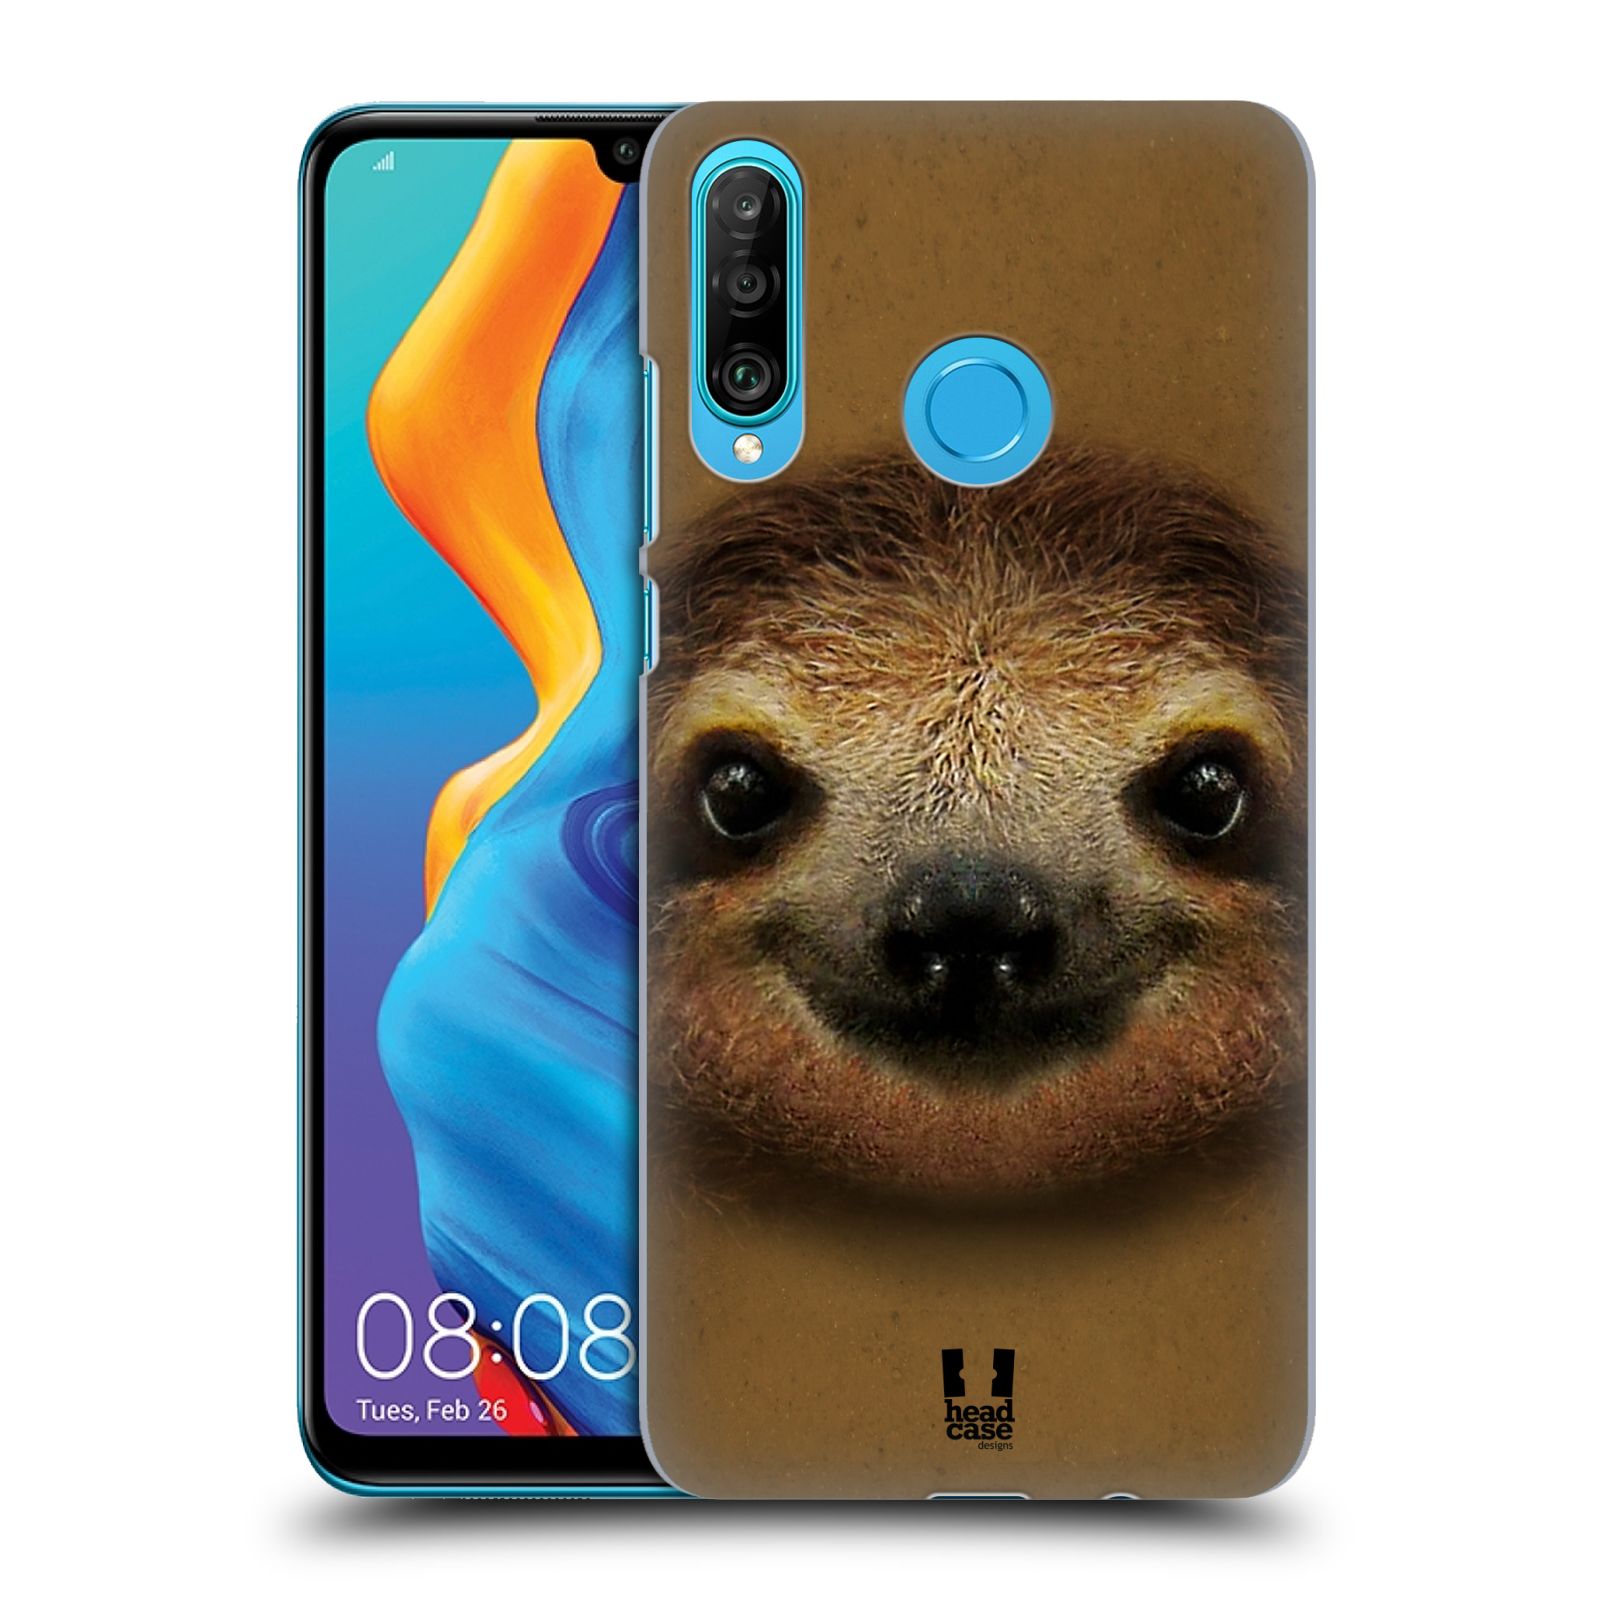 Pouzdro na mobil Huawei P30 LITE - HEAD CASE - vzor Zvířecí tváře 2 lenochod